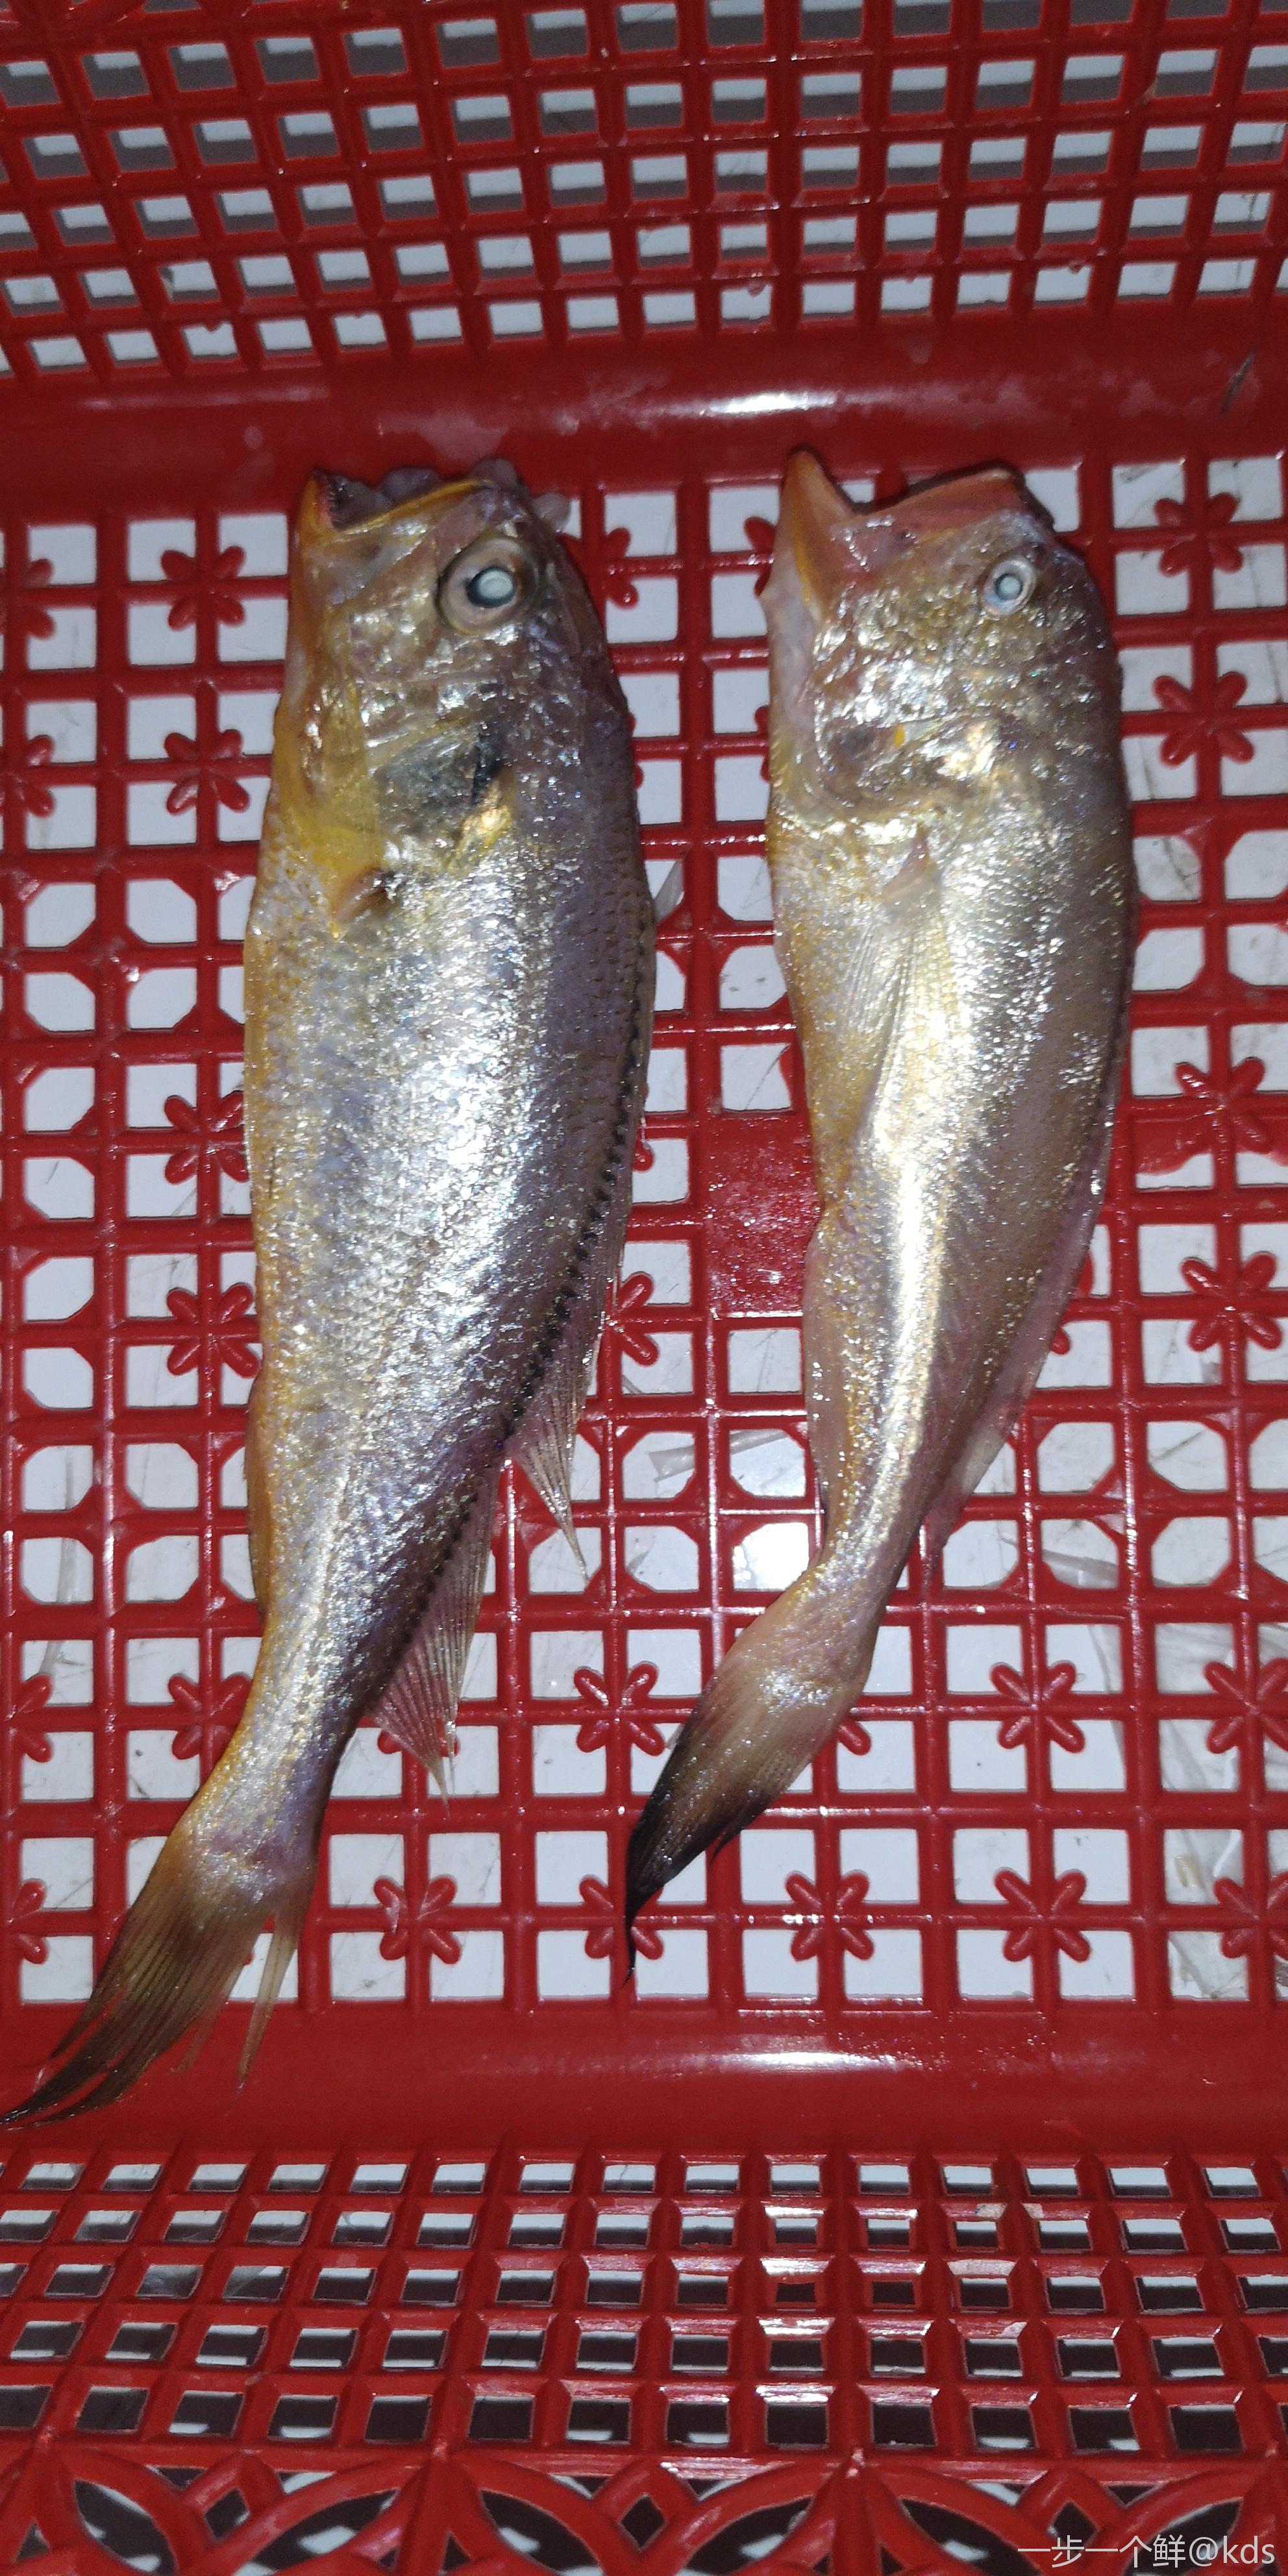 梅子鱼和小黄鱼的区别图片